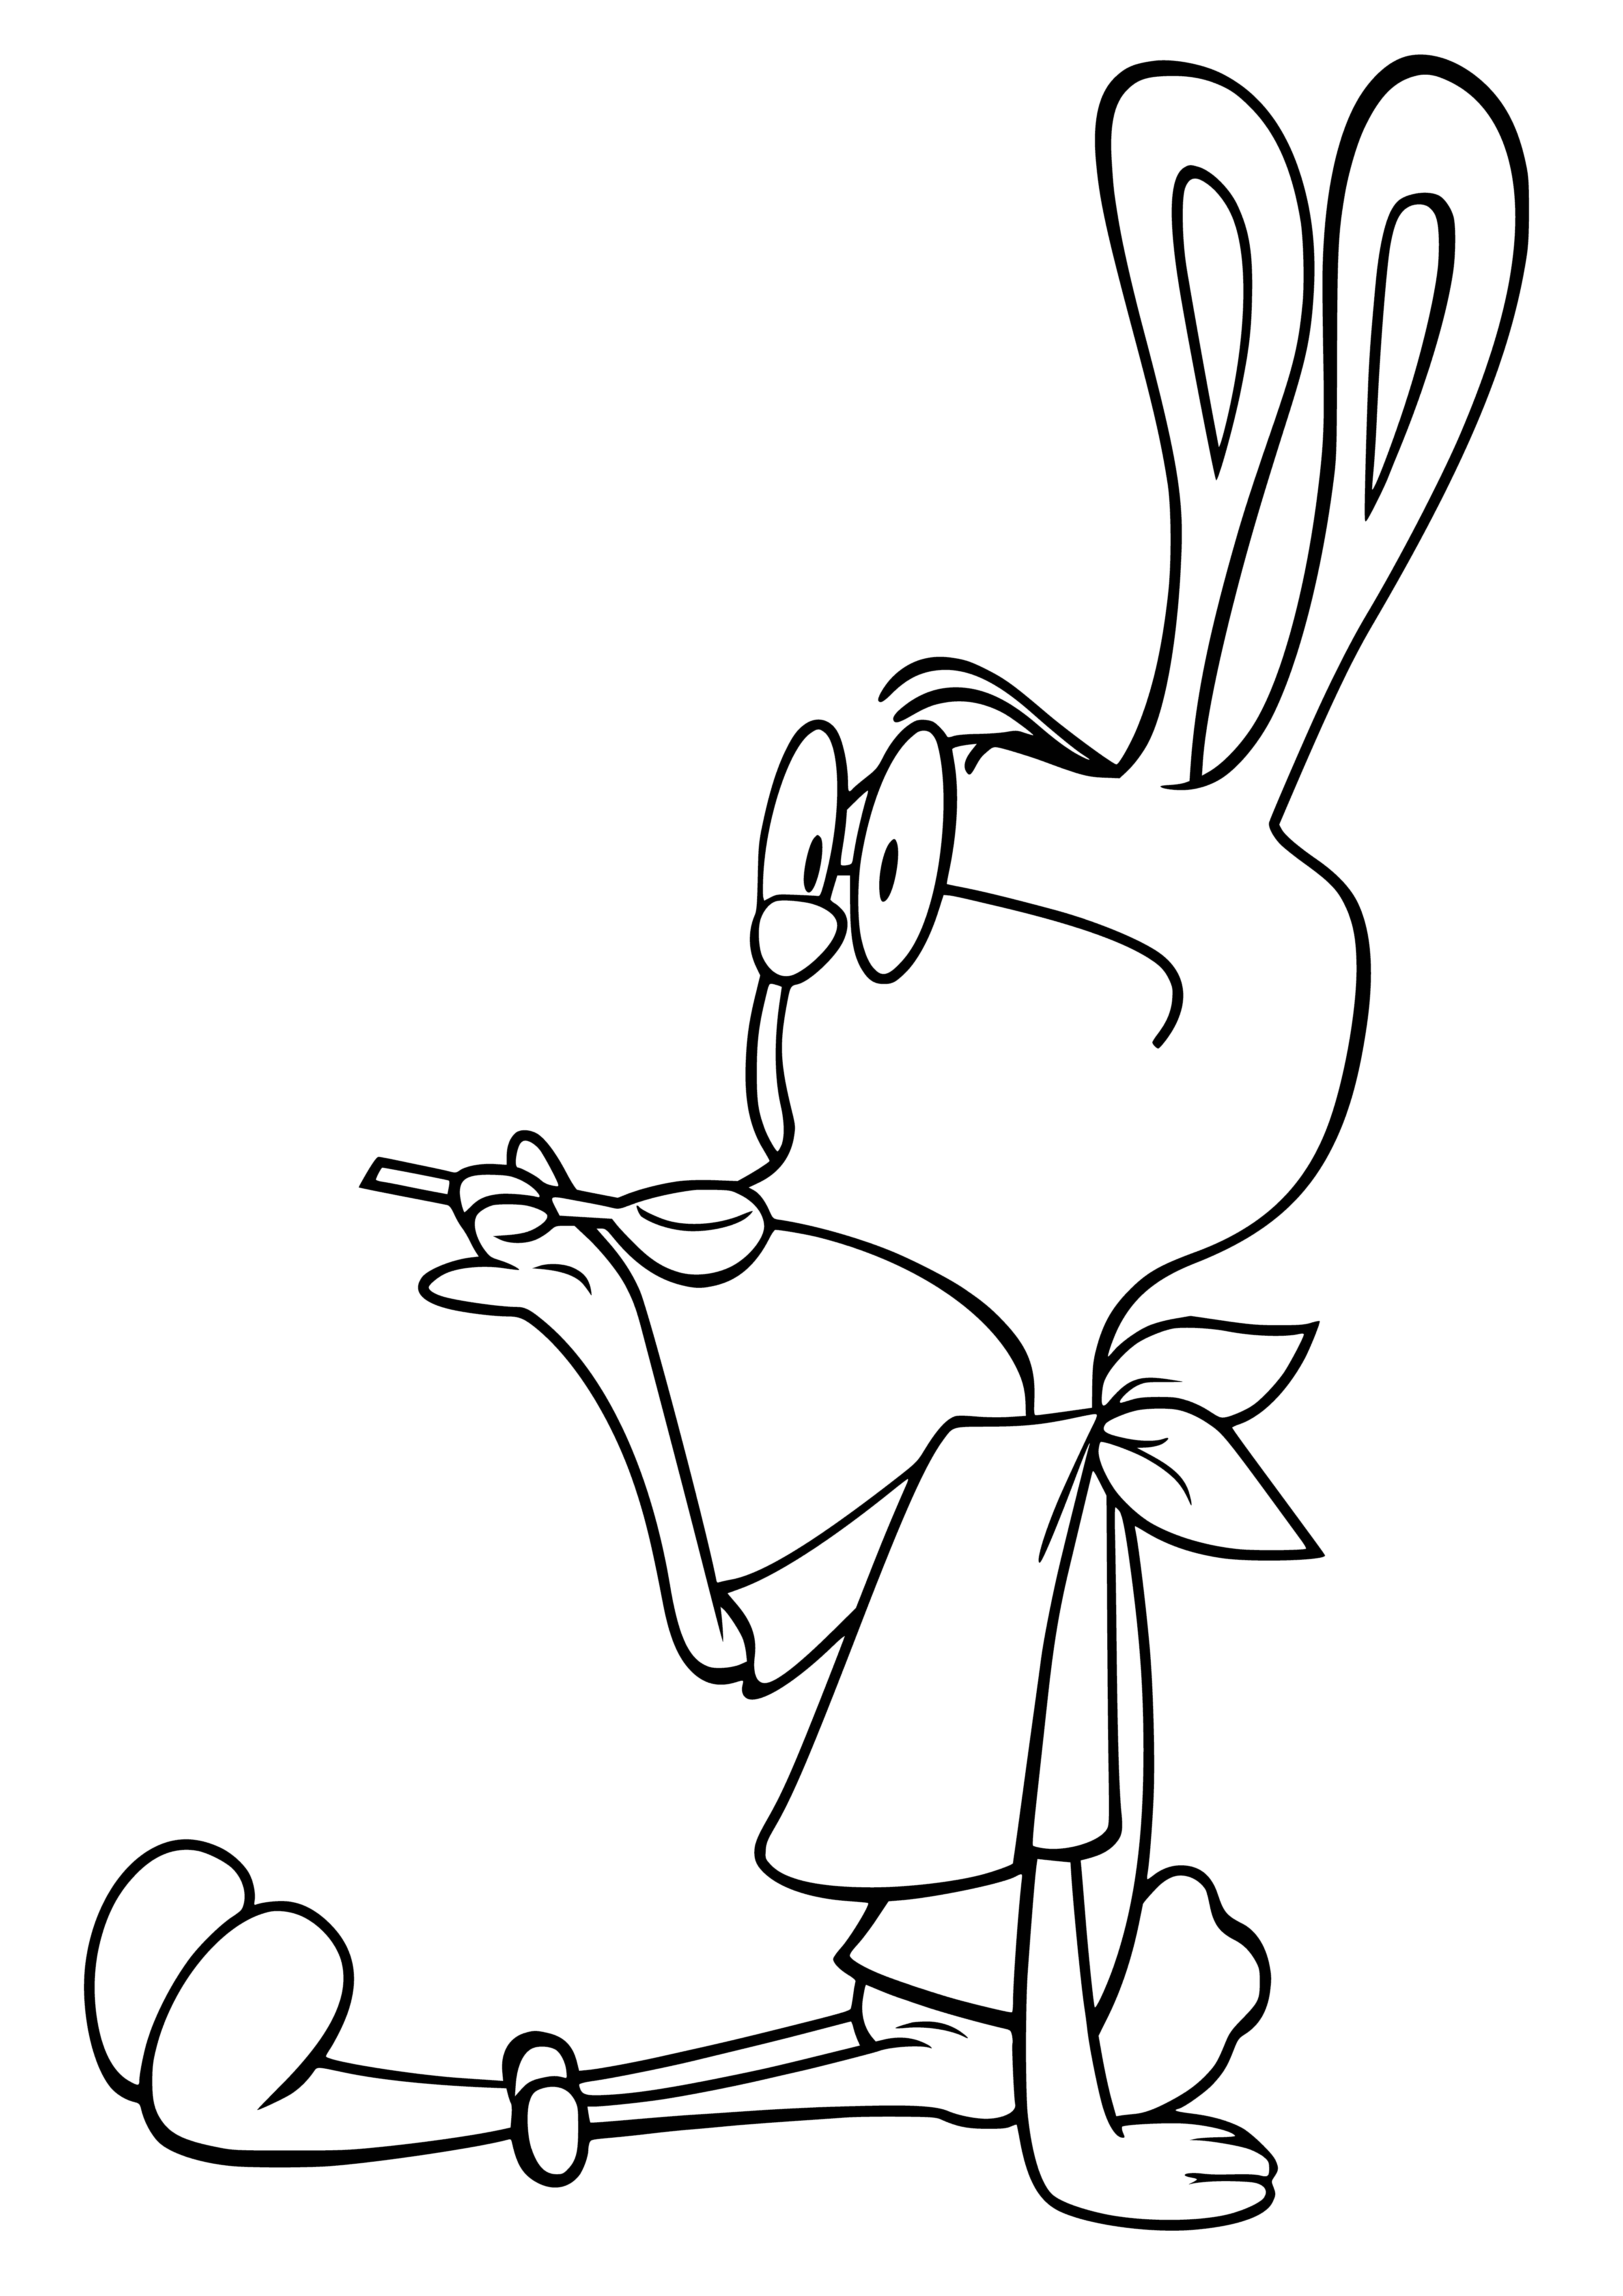 Кролик из Винни пуха раскраска для детей